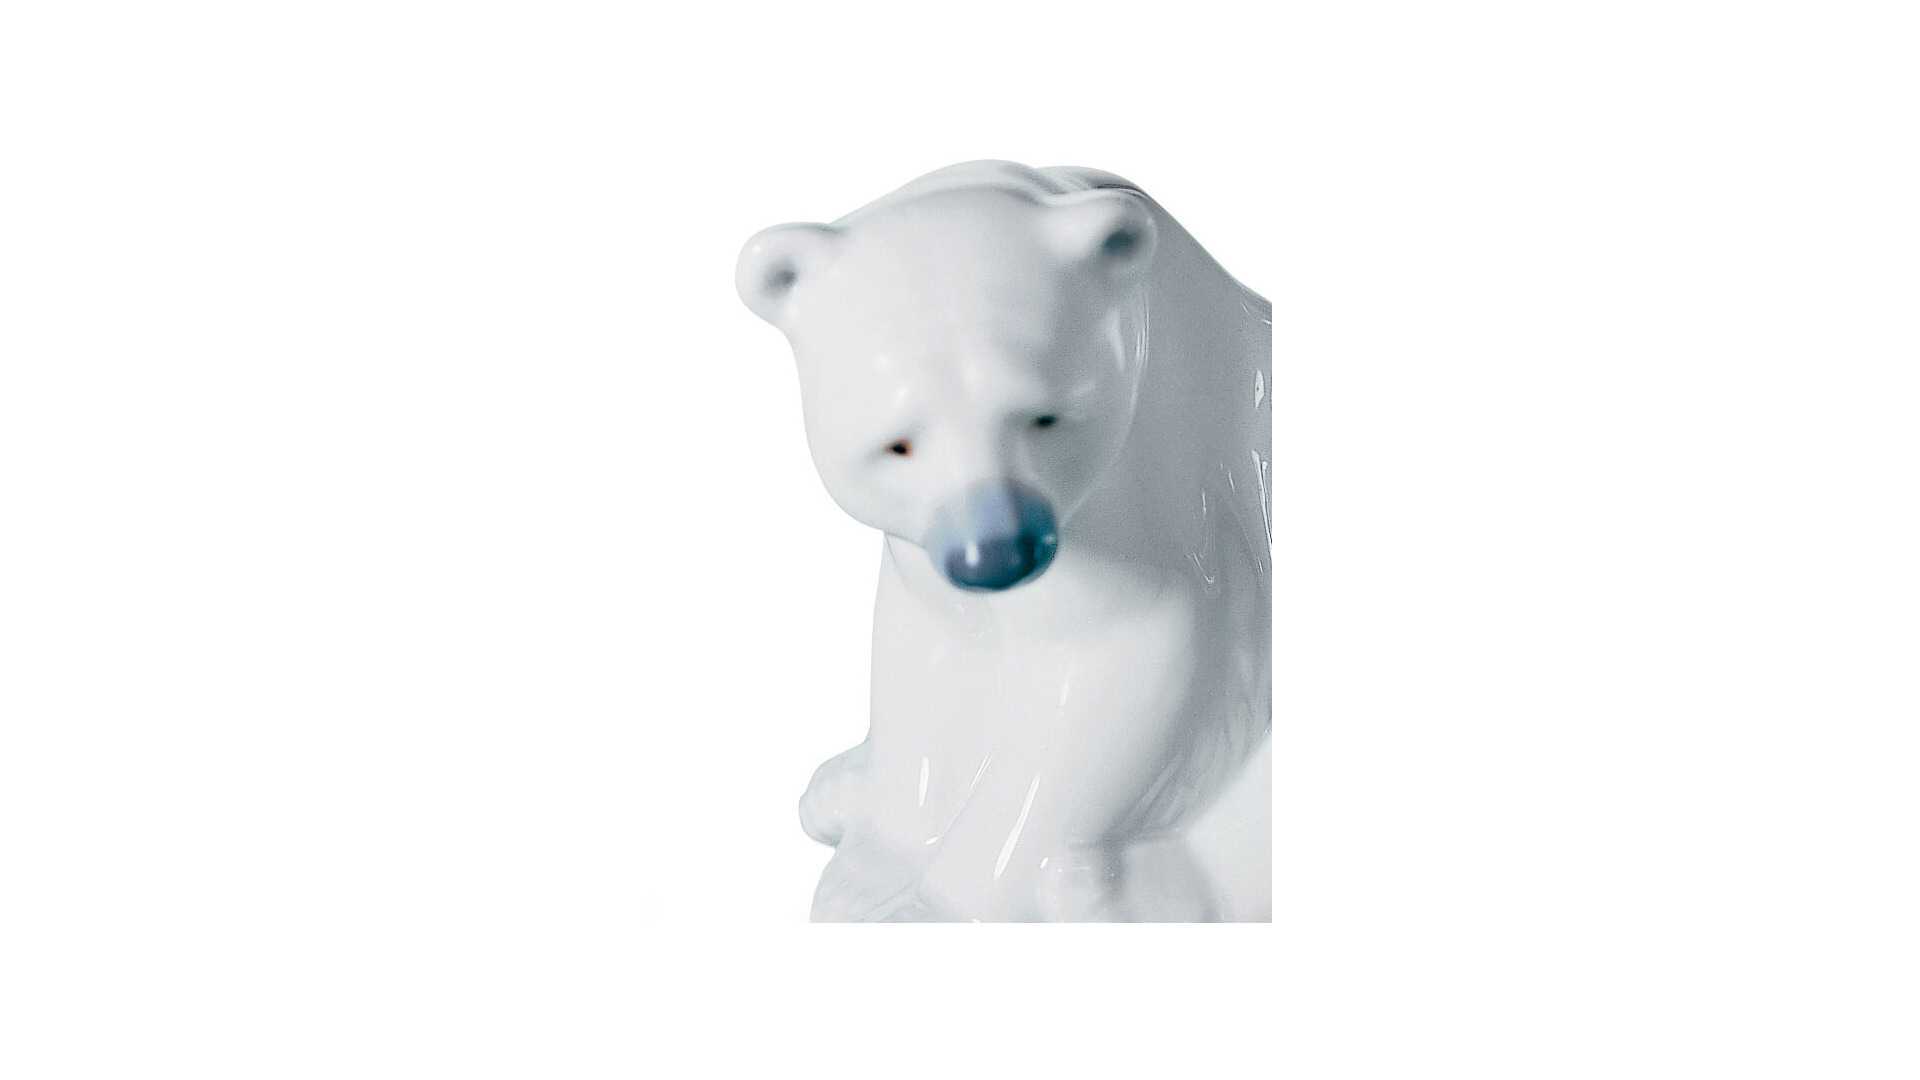 Фигурка Lladro Белый медведь III 8x9 см, фарфор